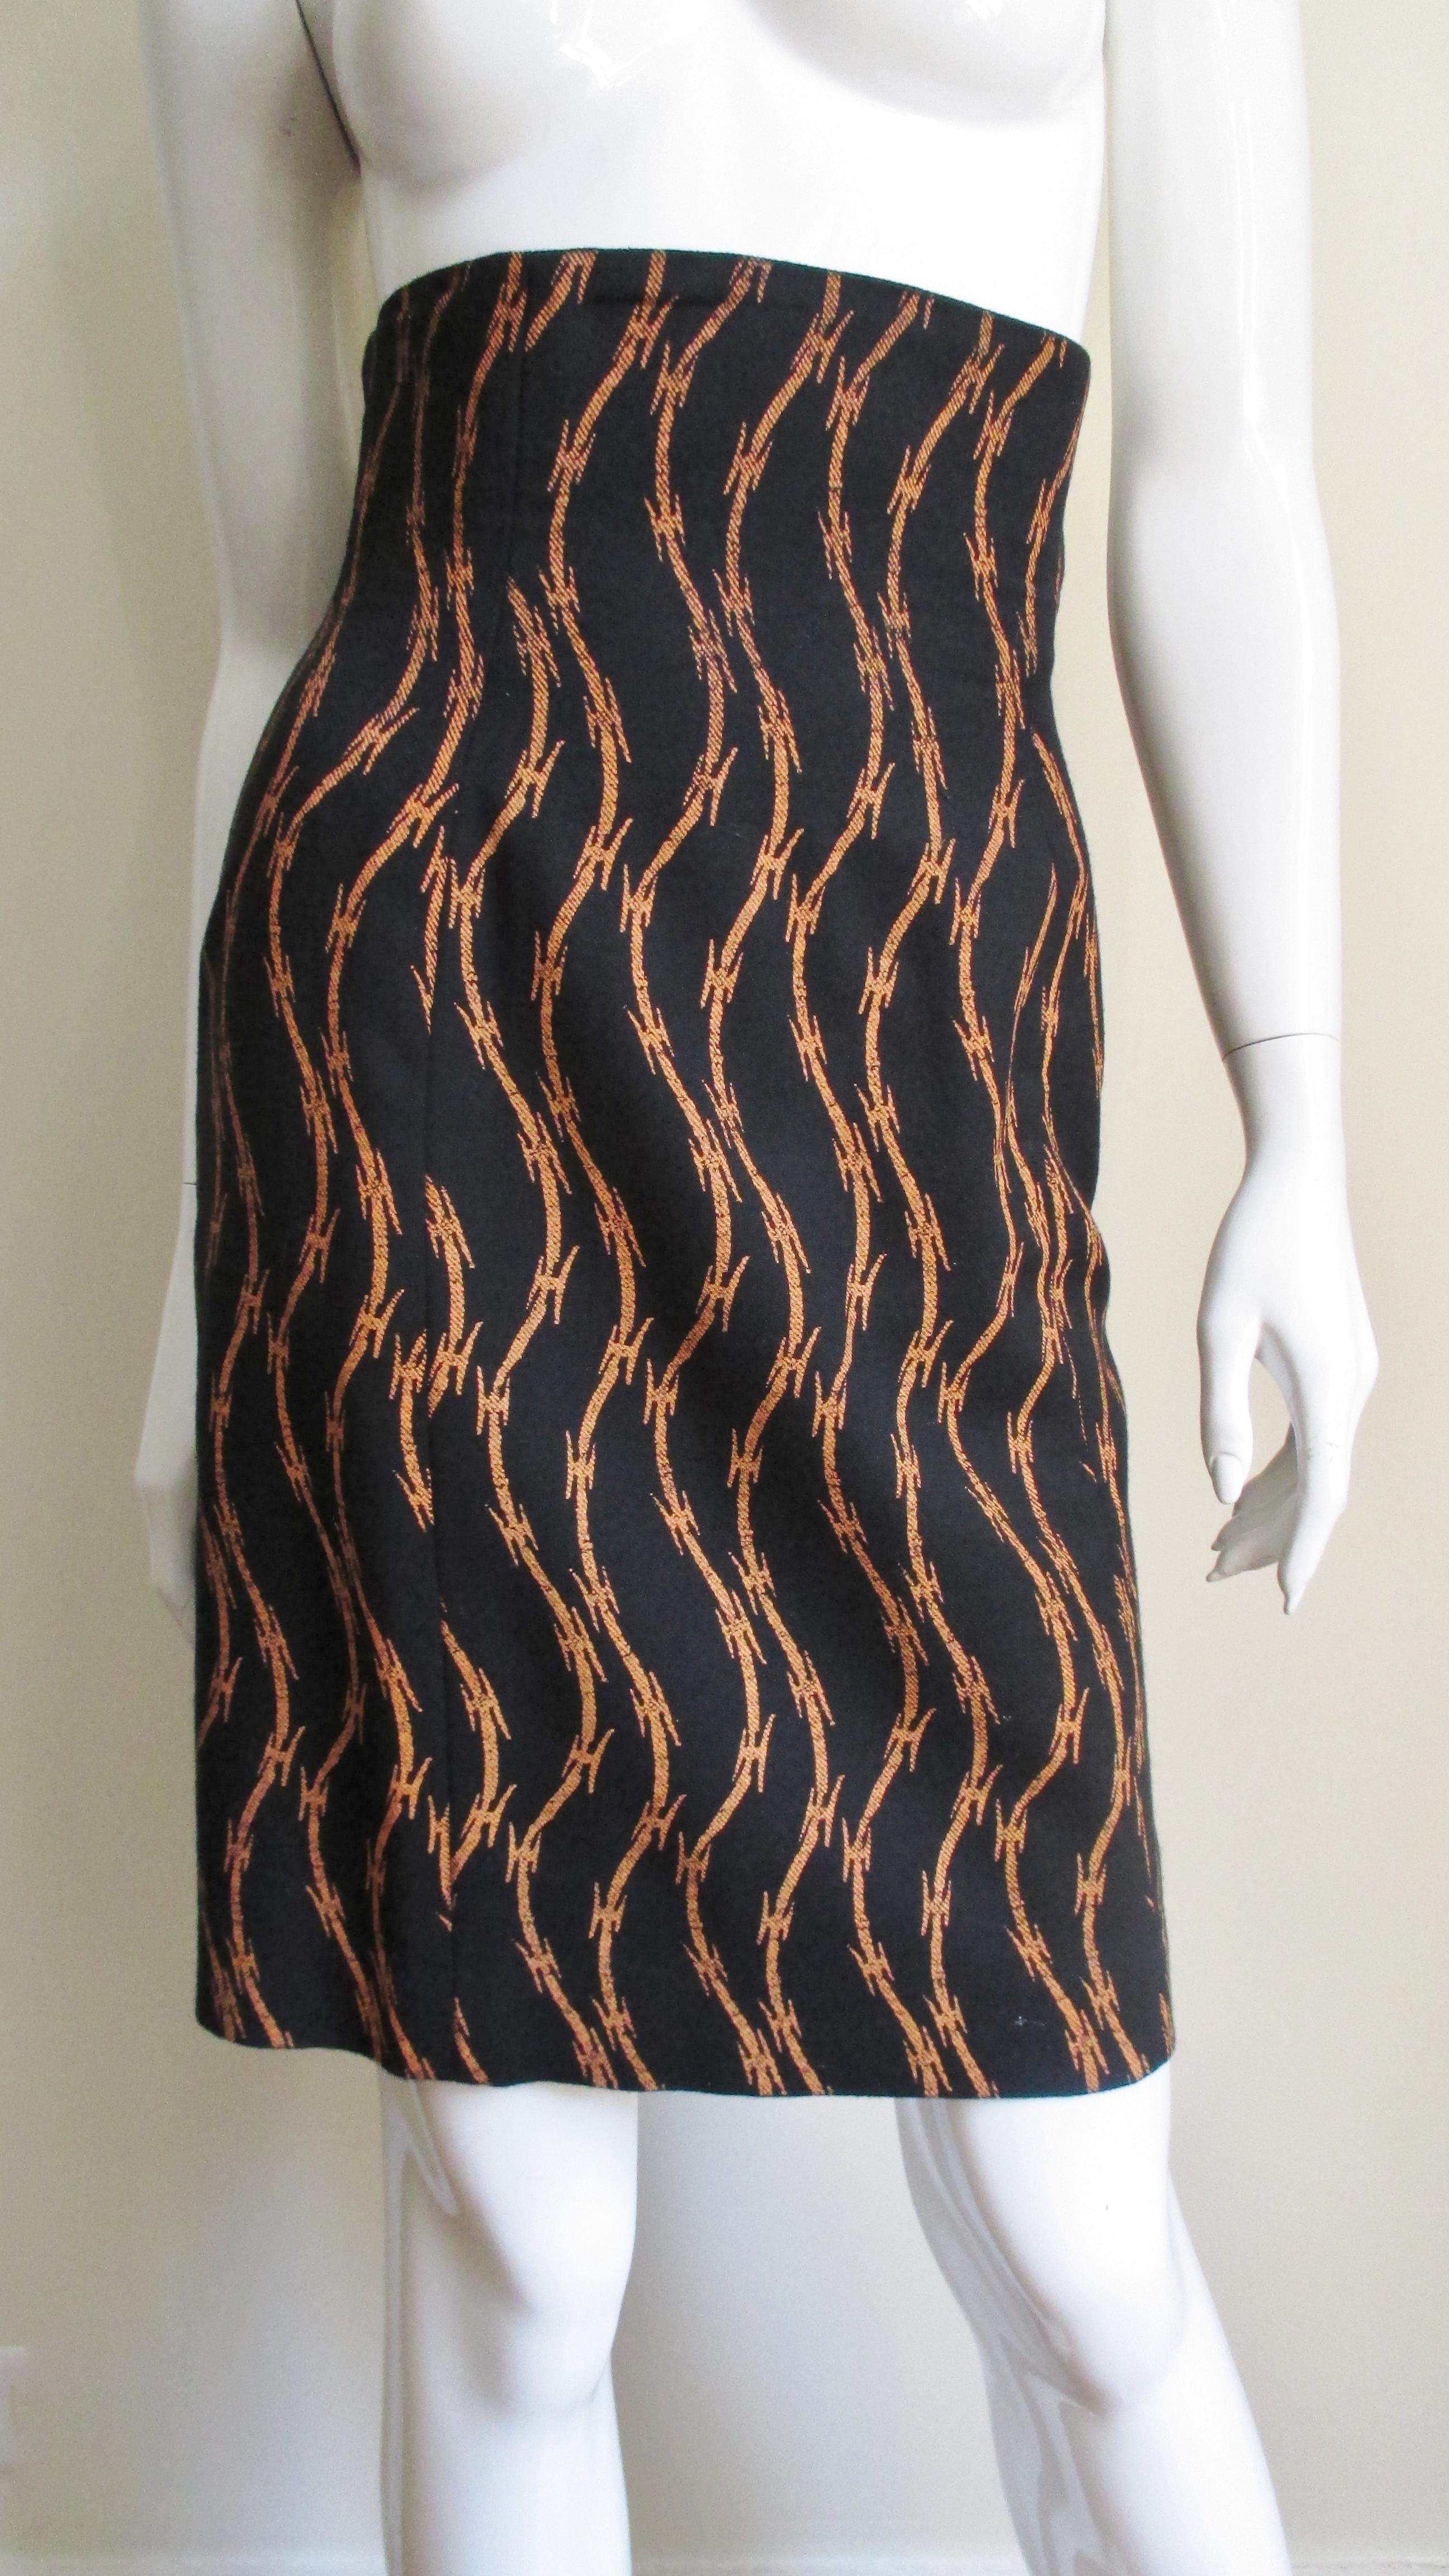 Jupe iconique en laine de Stephen Sprouse, avec des rangées verticales dorées de fils barbelés se détachant sur un fond noir.  La jupe de style crayon à taille haute est entièrement doublée et dotée d'une fermeture éclair sur le côté.
Convient aux